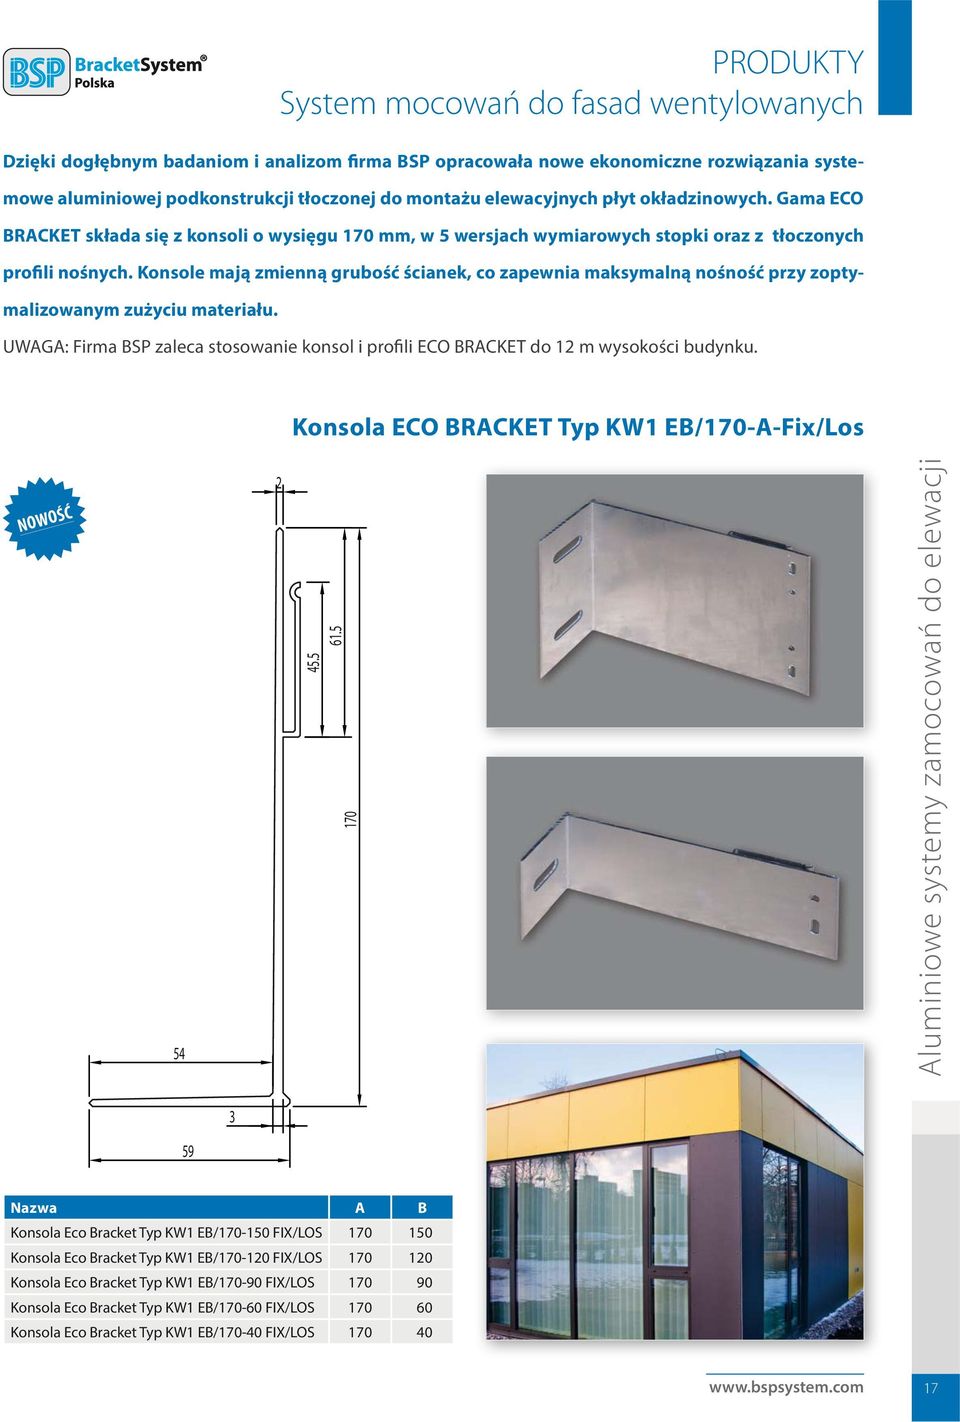 Konsole mają zmienną grubość ścianek, co zapewnia maksymalną nośność przy zoptymalizowanym zużyciu materiału. UWAGA: Firma BSP zaleca stosowanie konsol i profili ECO BRACKET do 12 m wysokości budynku.